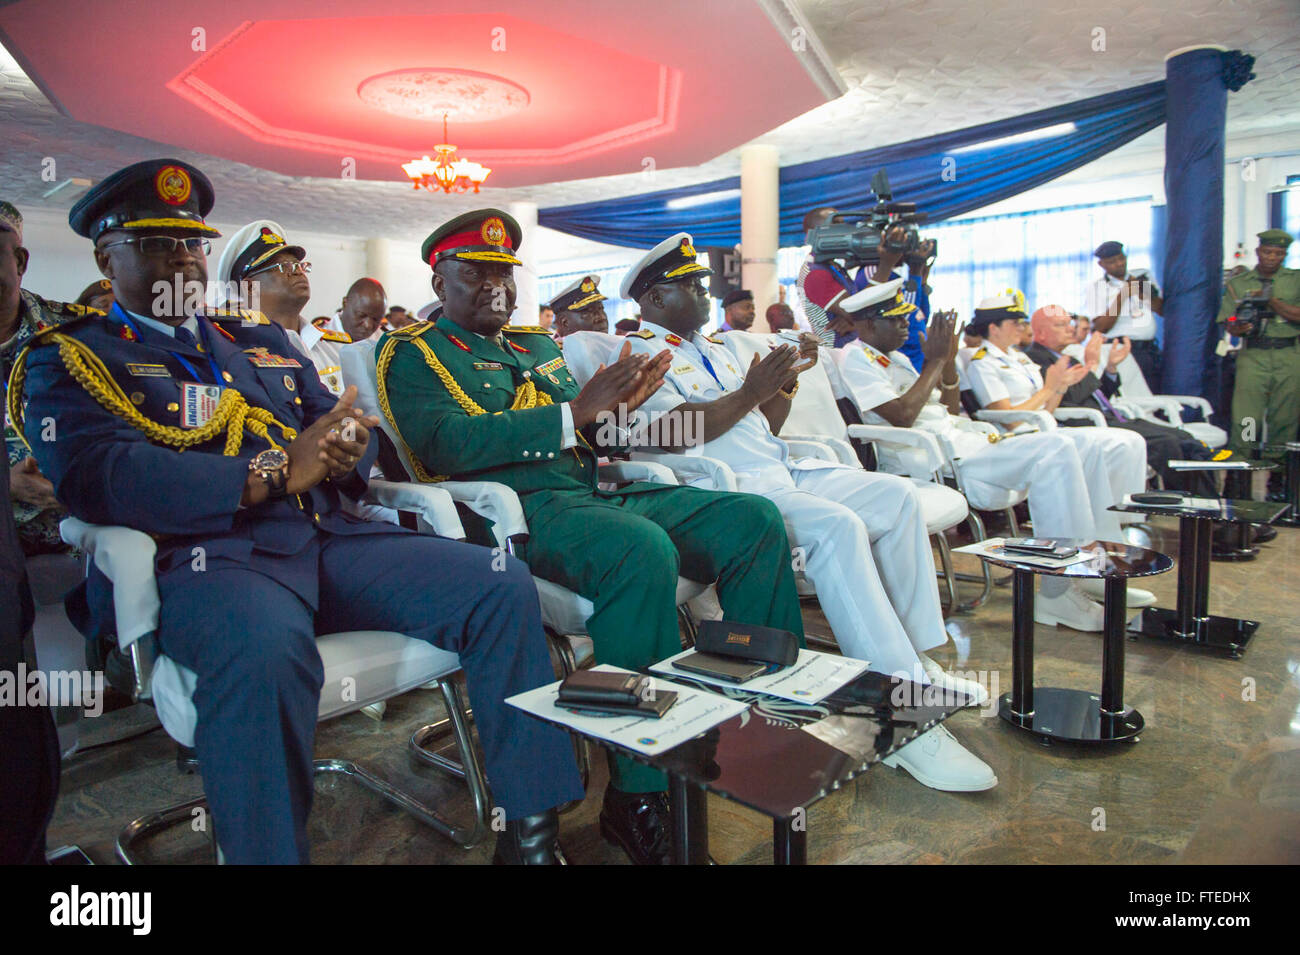 140416-N-ZE250-069 Lagos, Nigeria (16 avril 2014) - États-Unis et félicite les responsables nigérians au cours de l'Obangame Express 2014 Cérémonie d'ouverture à l'ouest de la marine nigériane, quartier général du Commandement des forces navales. Obangame Express est un golfe de Guinée maritime multinationale à base d'exercice visant à améliorer la coopération, l'interdiction de l'expertise et l'échange d'information entre les pays d'Afrique centrale et de la force maritime afin d'accroître la sécurité maritime et la sécurité dans la région. (U.S. Photo par marine Spécialiste de la communication de masse Seaman Weston Jones/libérés) Banque D'Images